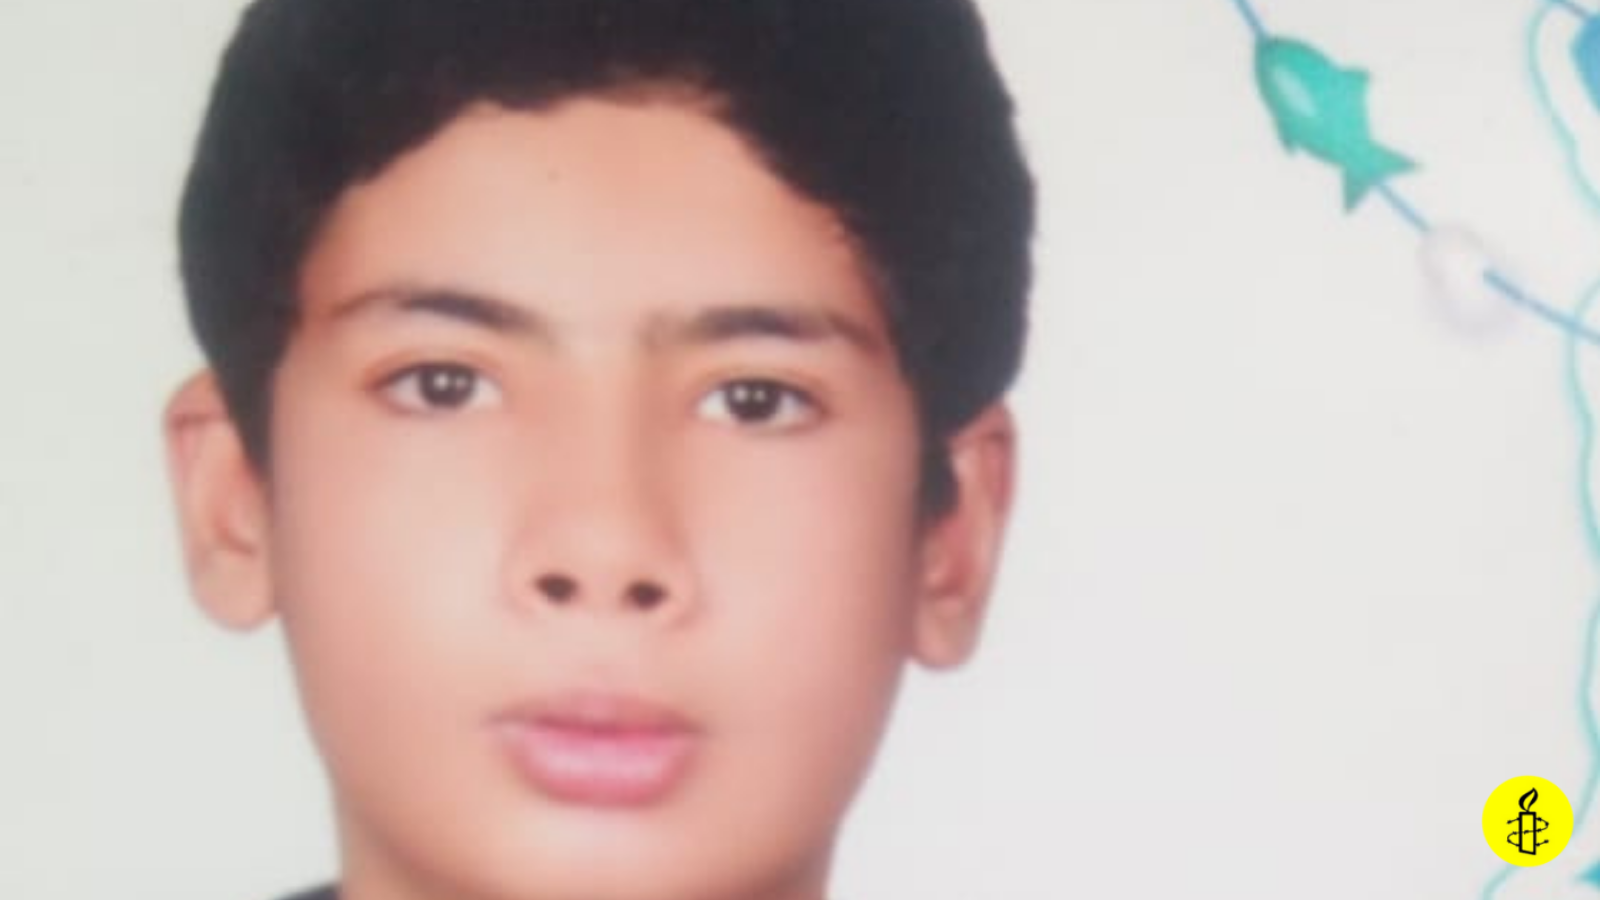 Riesgo de ejecución de joven iraní detenido a los 17 años